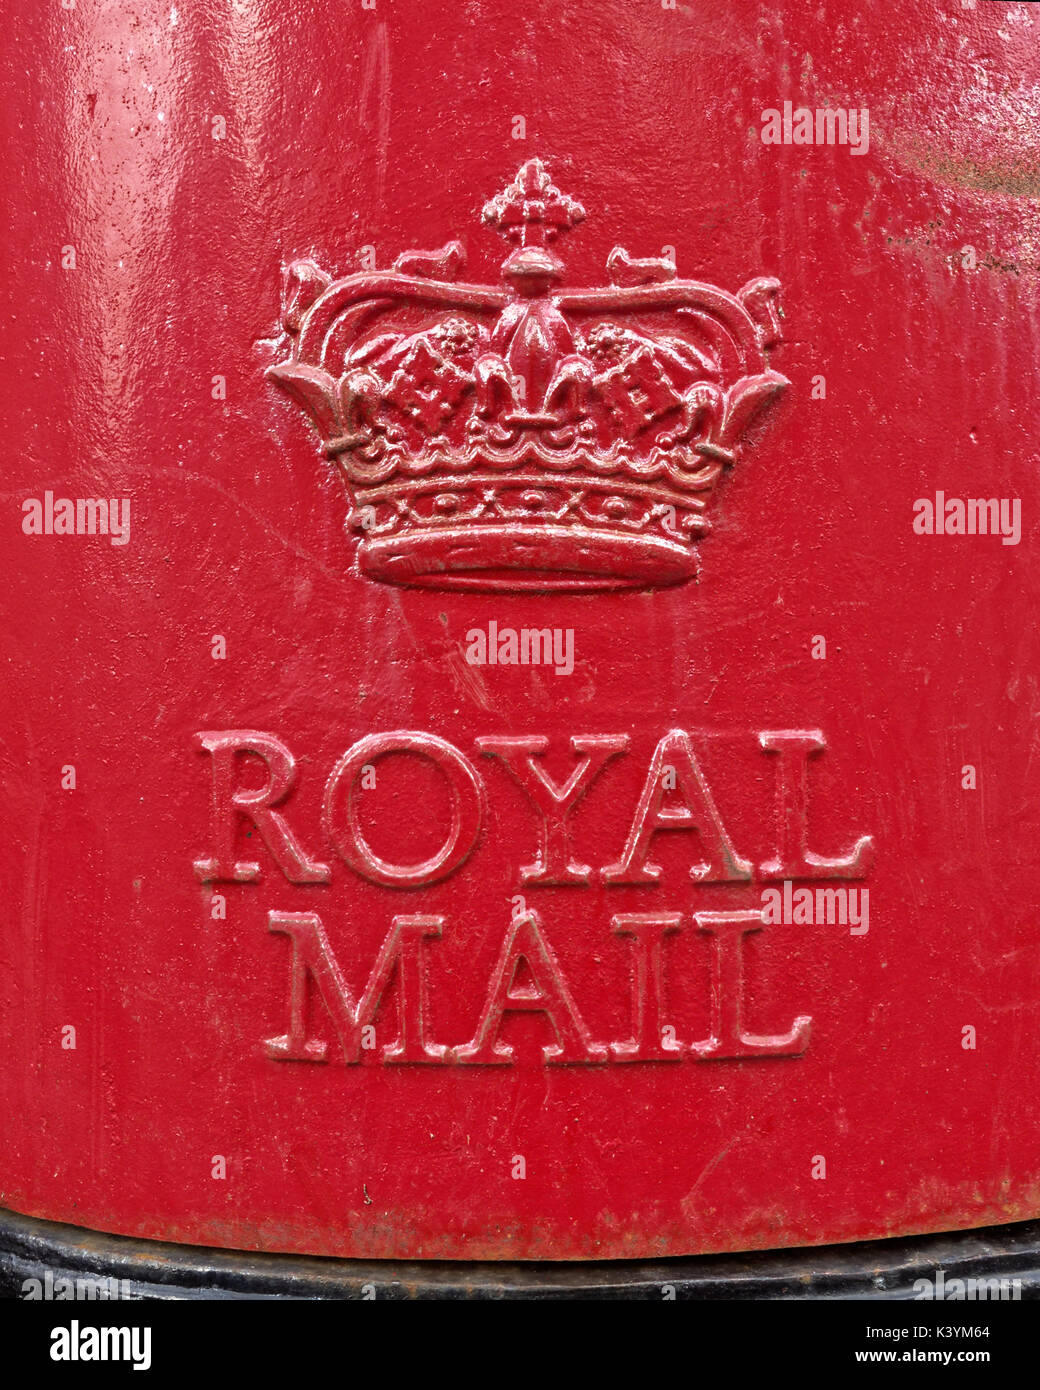 royal mail logo red crown detail pillar box scottish crown Stock Photo